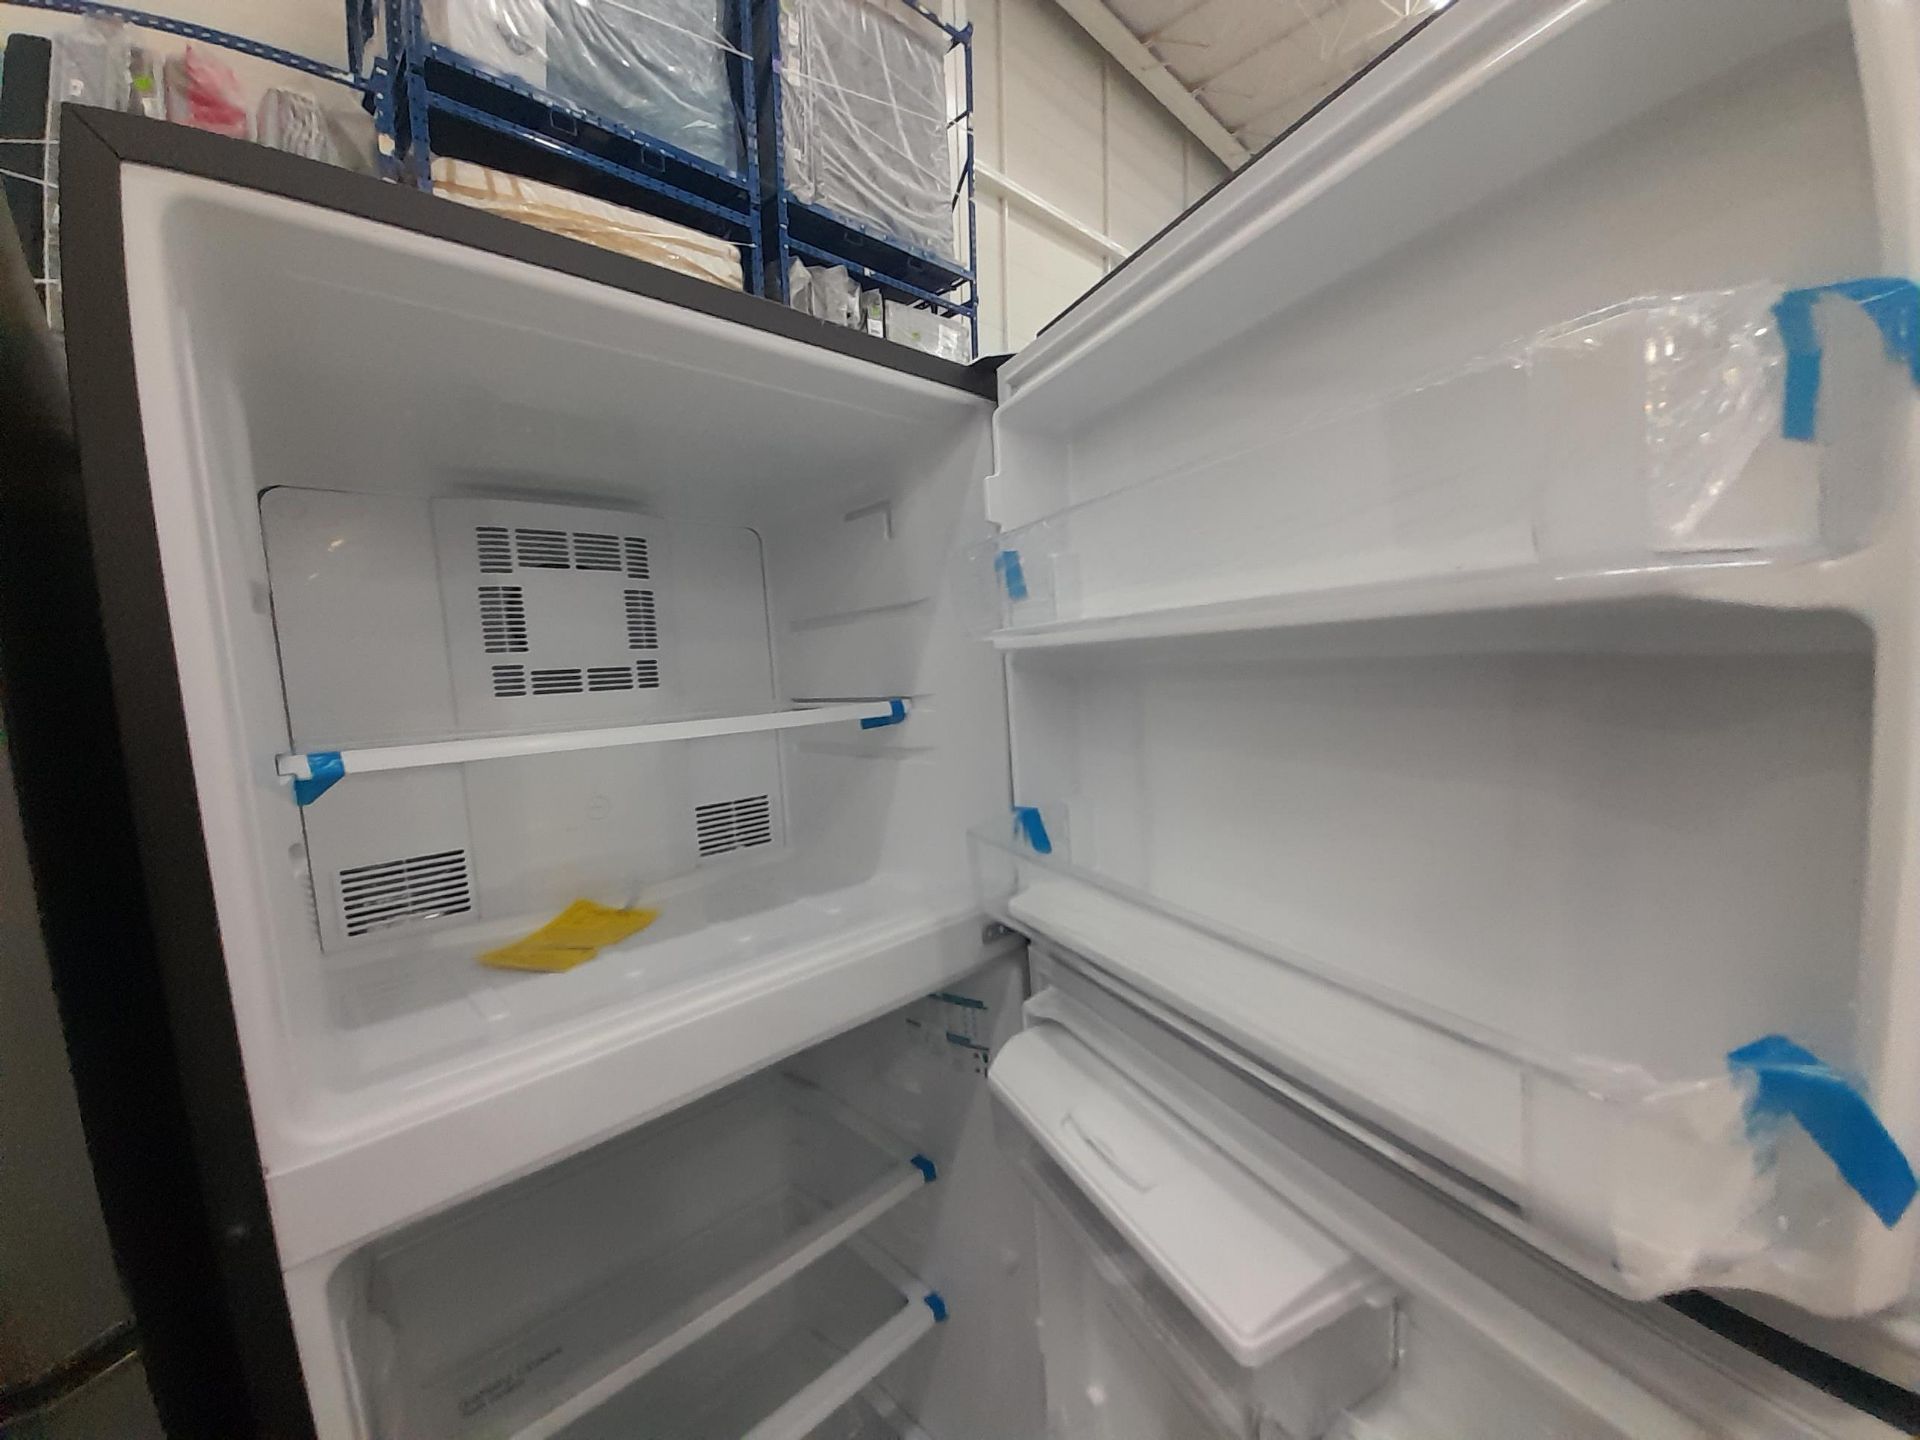 Lote de 2 Refrigeradores contiene: 1 Refrigerador con dispensador de agua Marca MABE, Modelo RM - Image 4 of 8